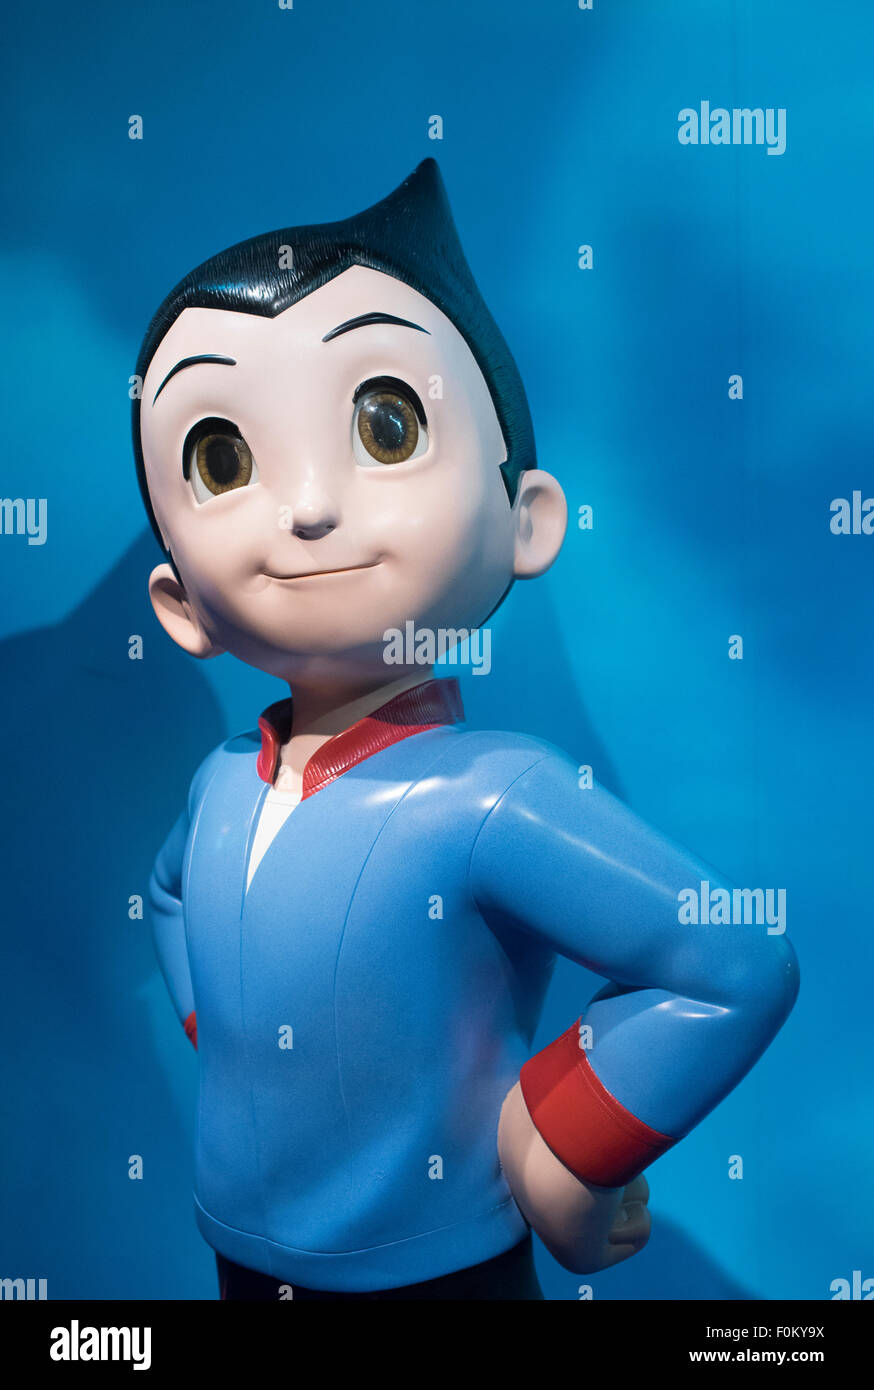 Astro Boy - Madame Tussauds Hong Kong, Wachsfigurenkabinett im Peak Tower auf Hong Kong Island Stockfoto